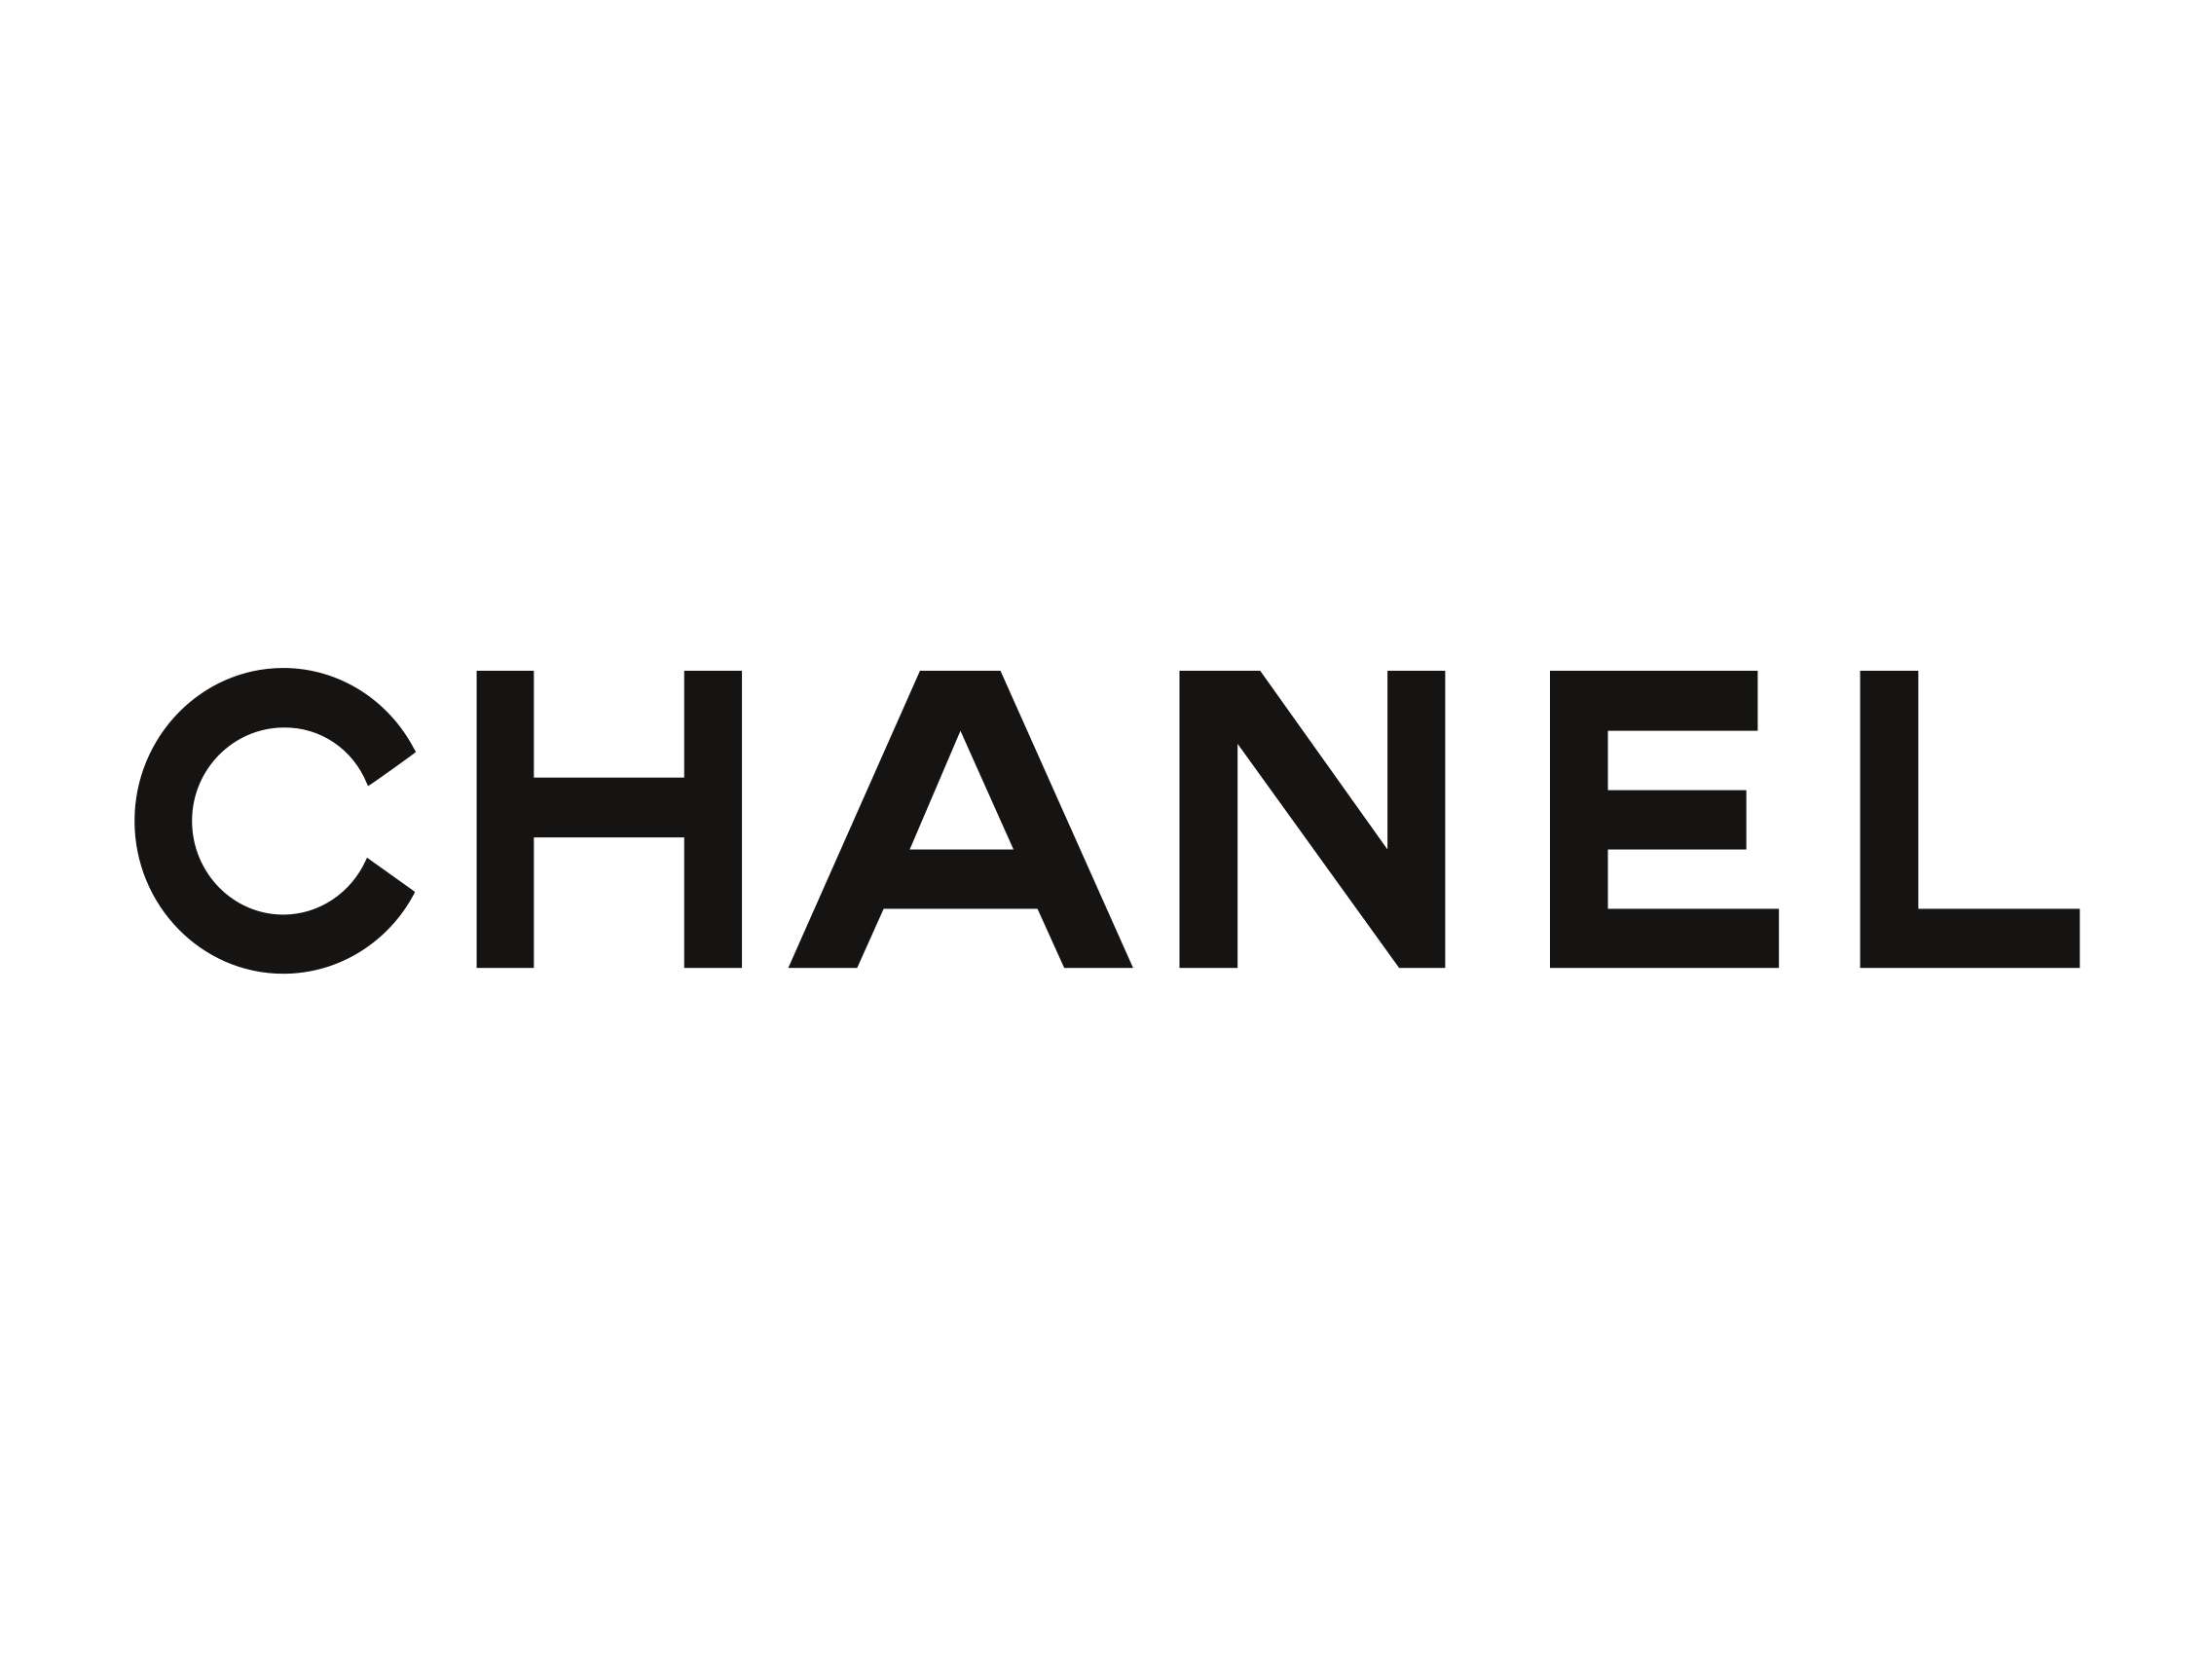 Best Of Coco Chanel Desktop Wallpaper